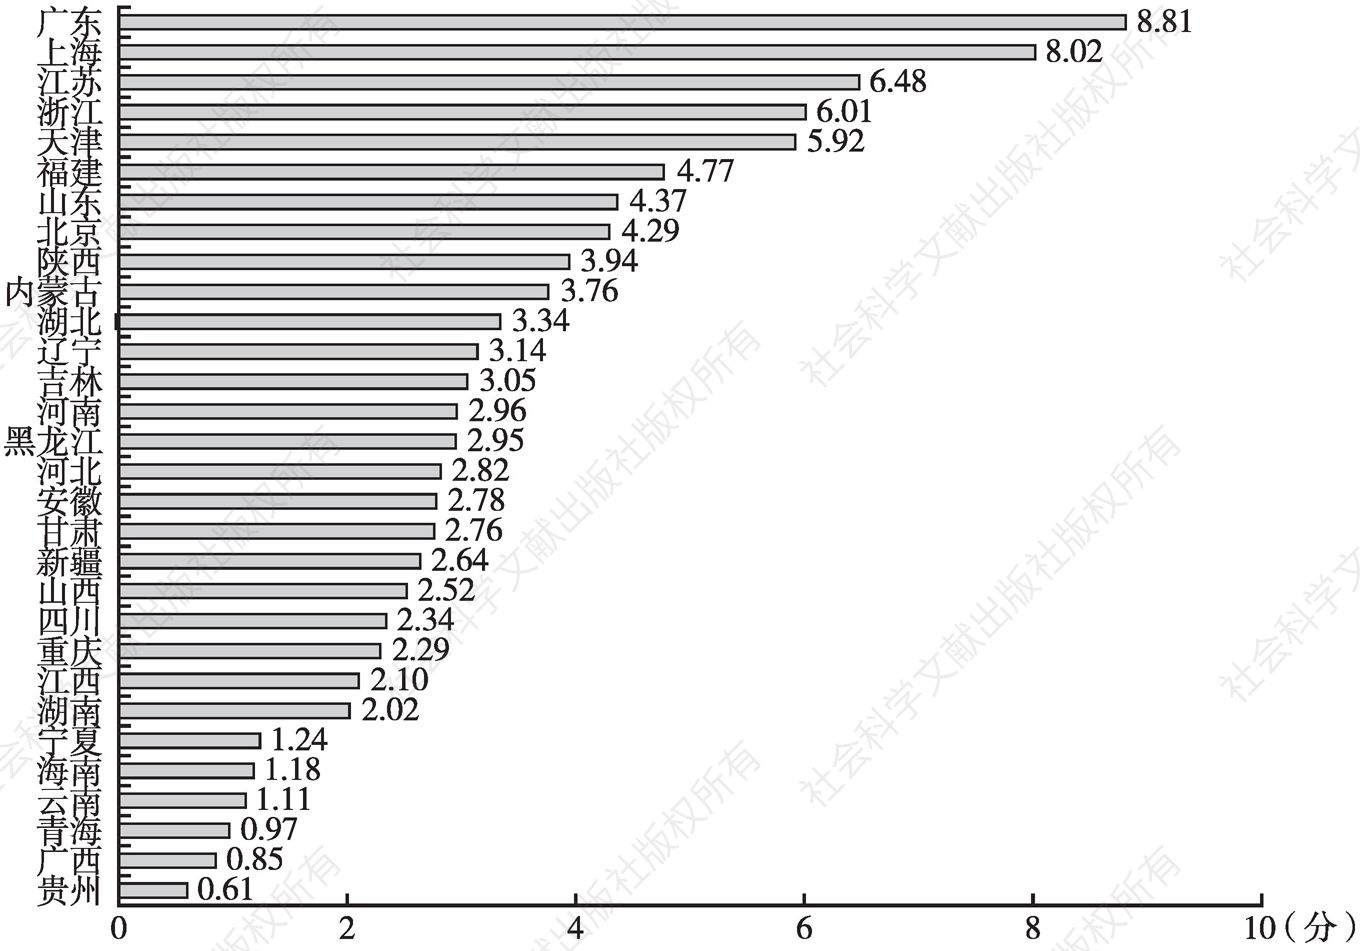 图13 30个省（区、市）经济增长的平均综合评分（2000年以来）